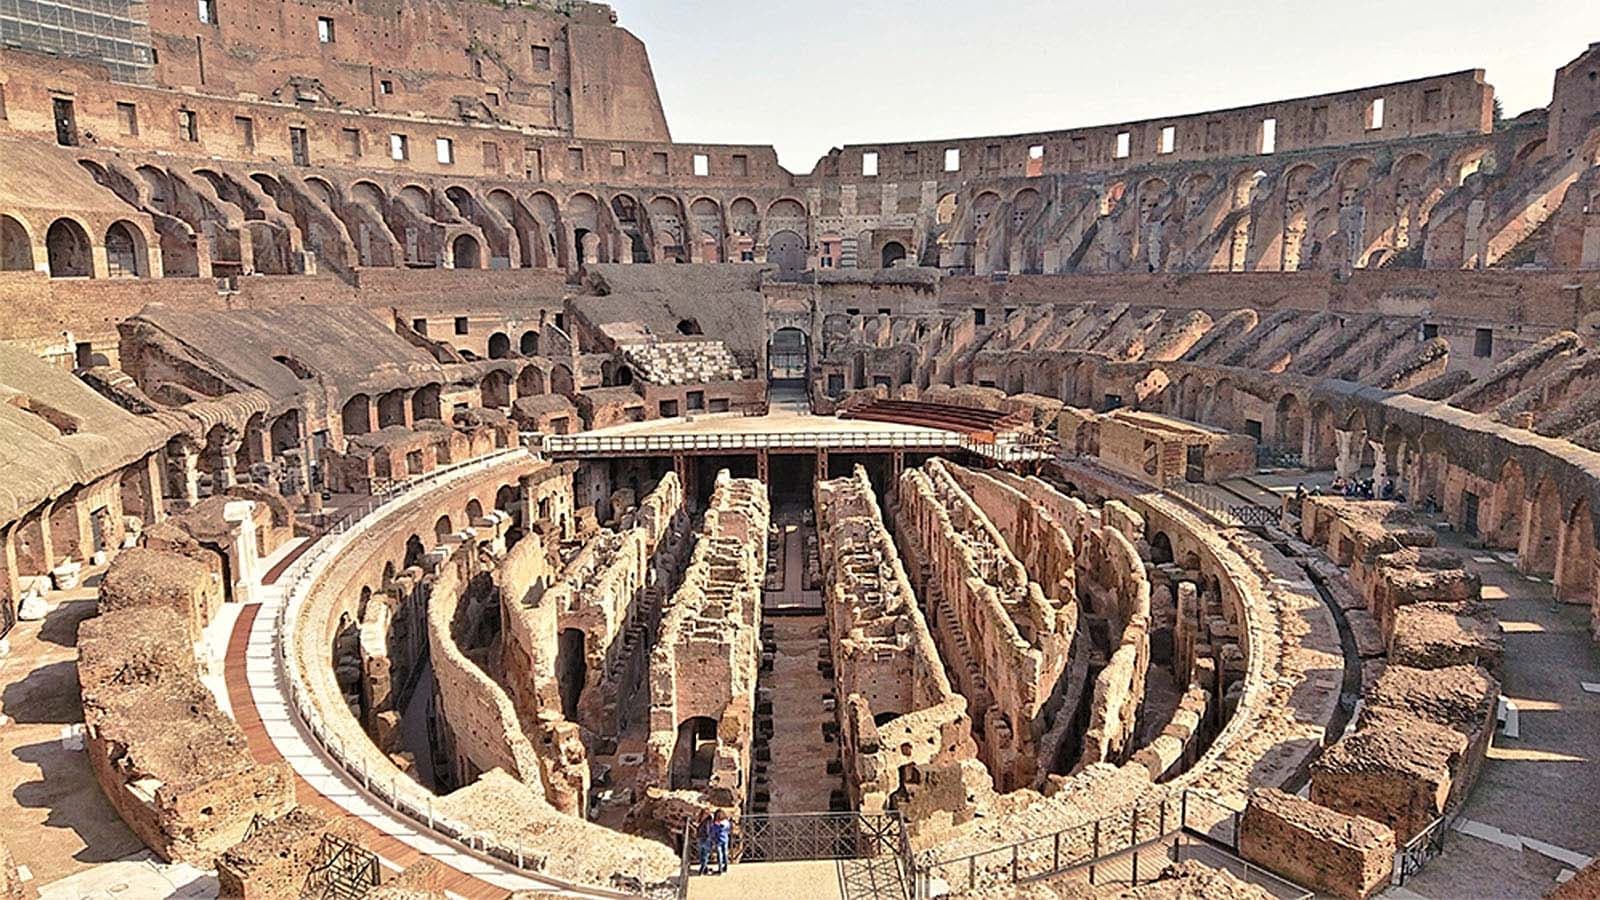 “Căn hầm bí mật” tại Đấu trường La Mã lần đầu được mở cửa tham quan